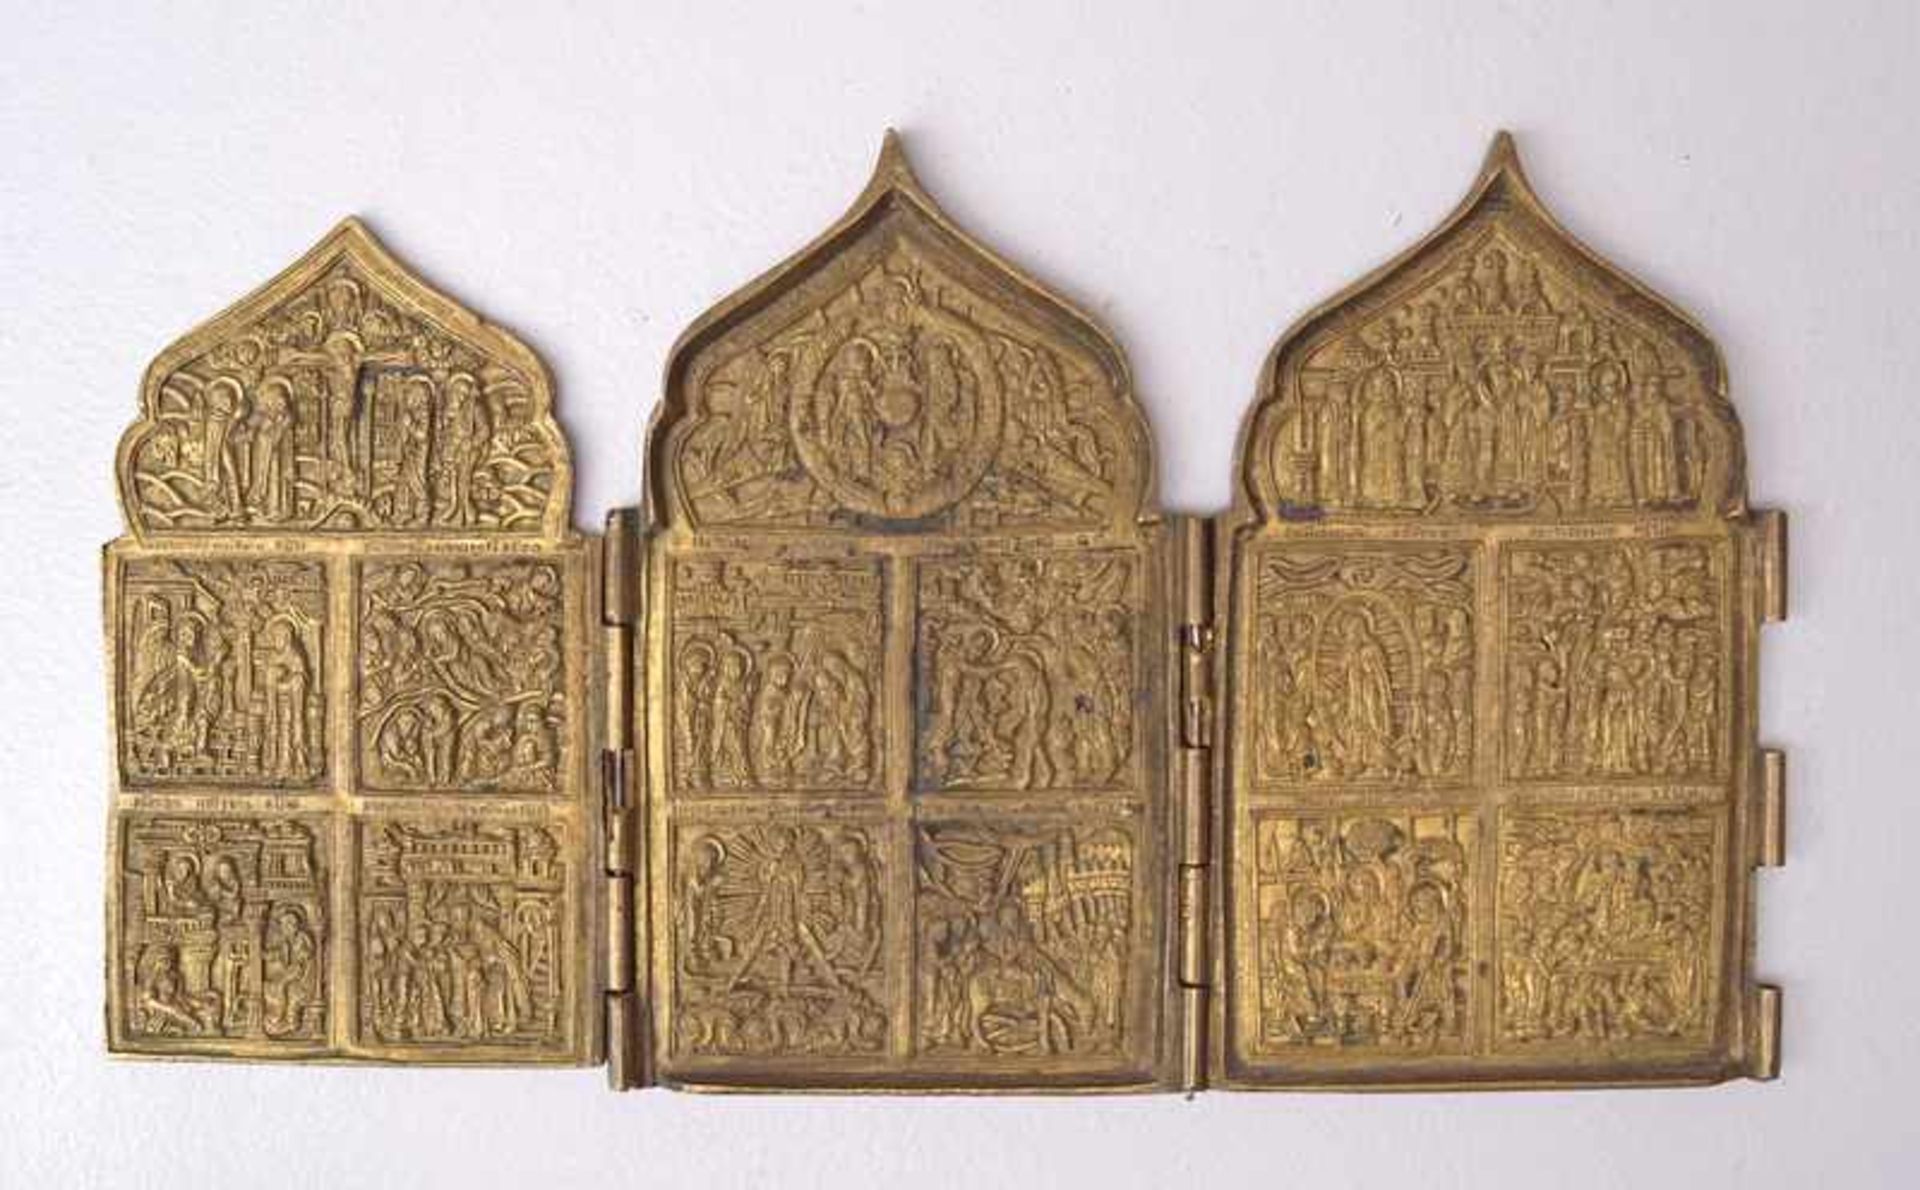 Reiseikone Triptychon Leben Jesu, Russland, 19. Jhd.3 Tafeln mit jeweils 5 Szenen aus dem Leben Jesu